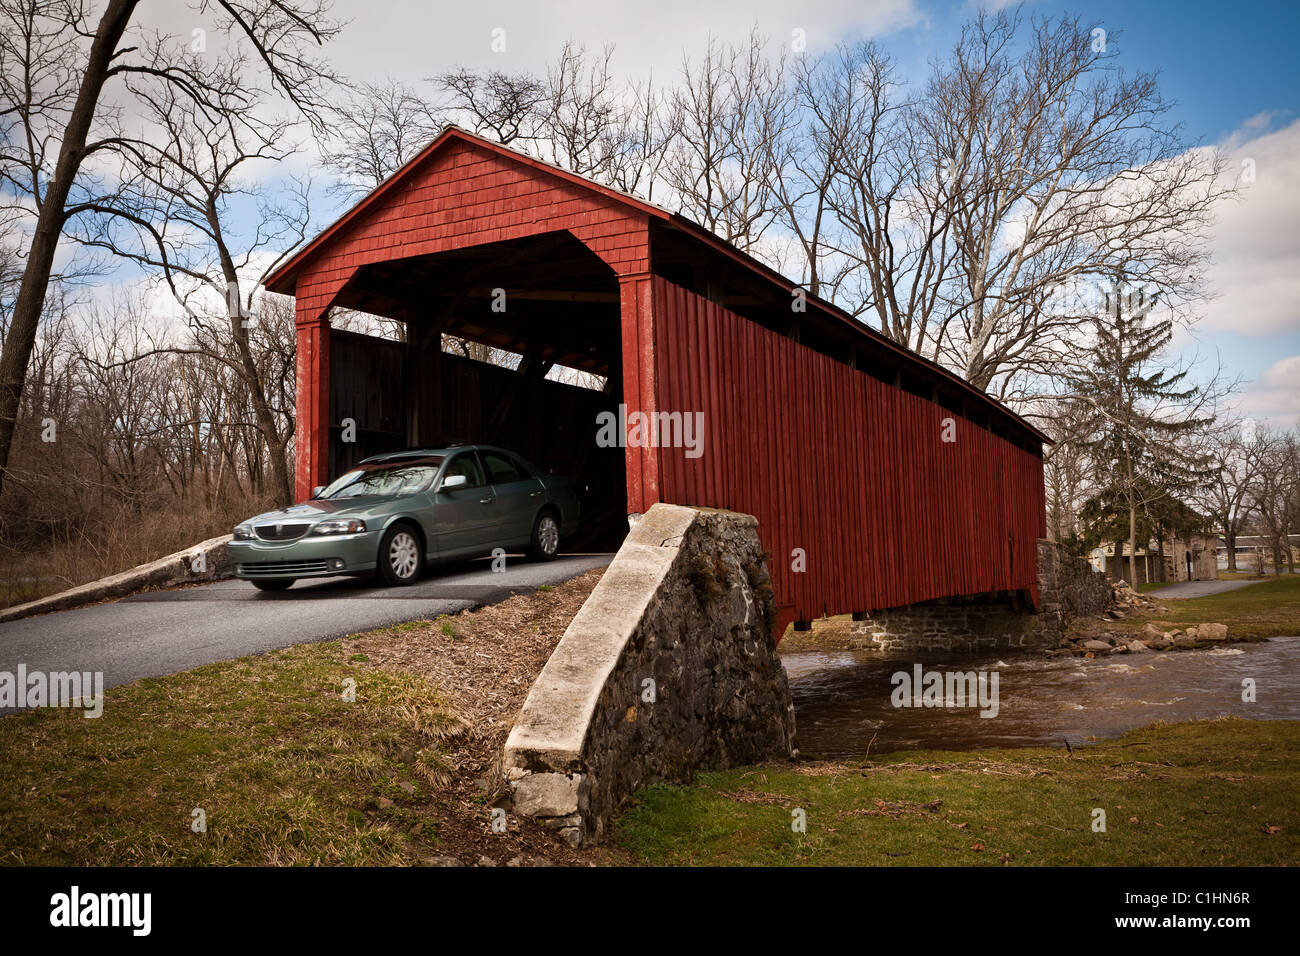 Piscine voiture passe par le pont couvert de Forge Caenarvon Township, PA Banque D'Images